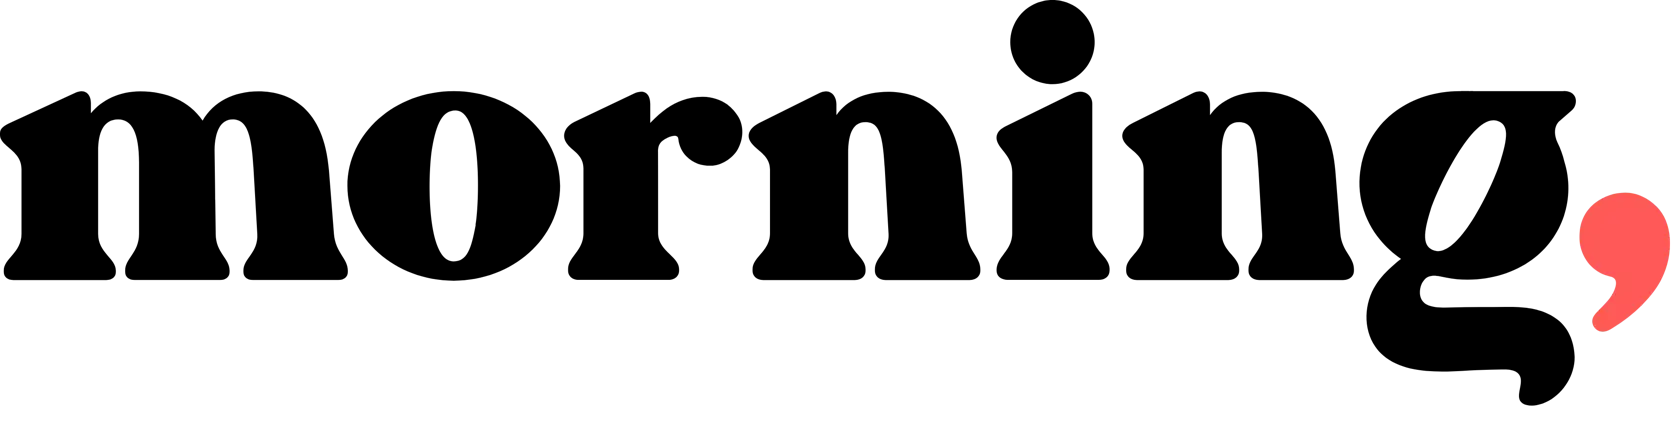 Asana-Fallstudie – Morning-Logo